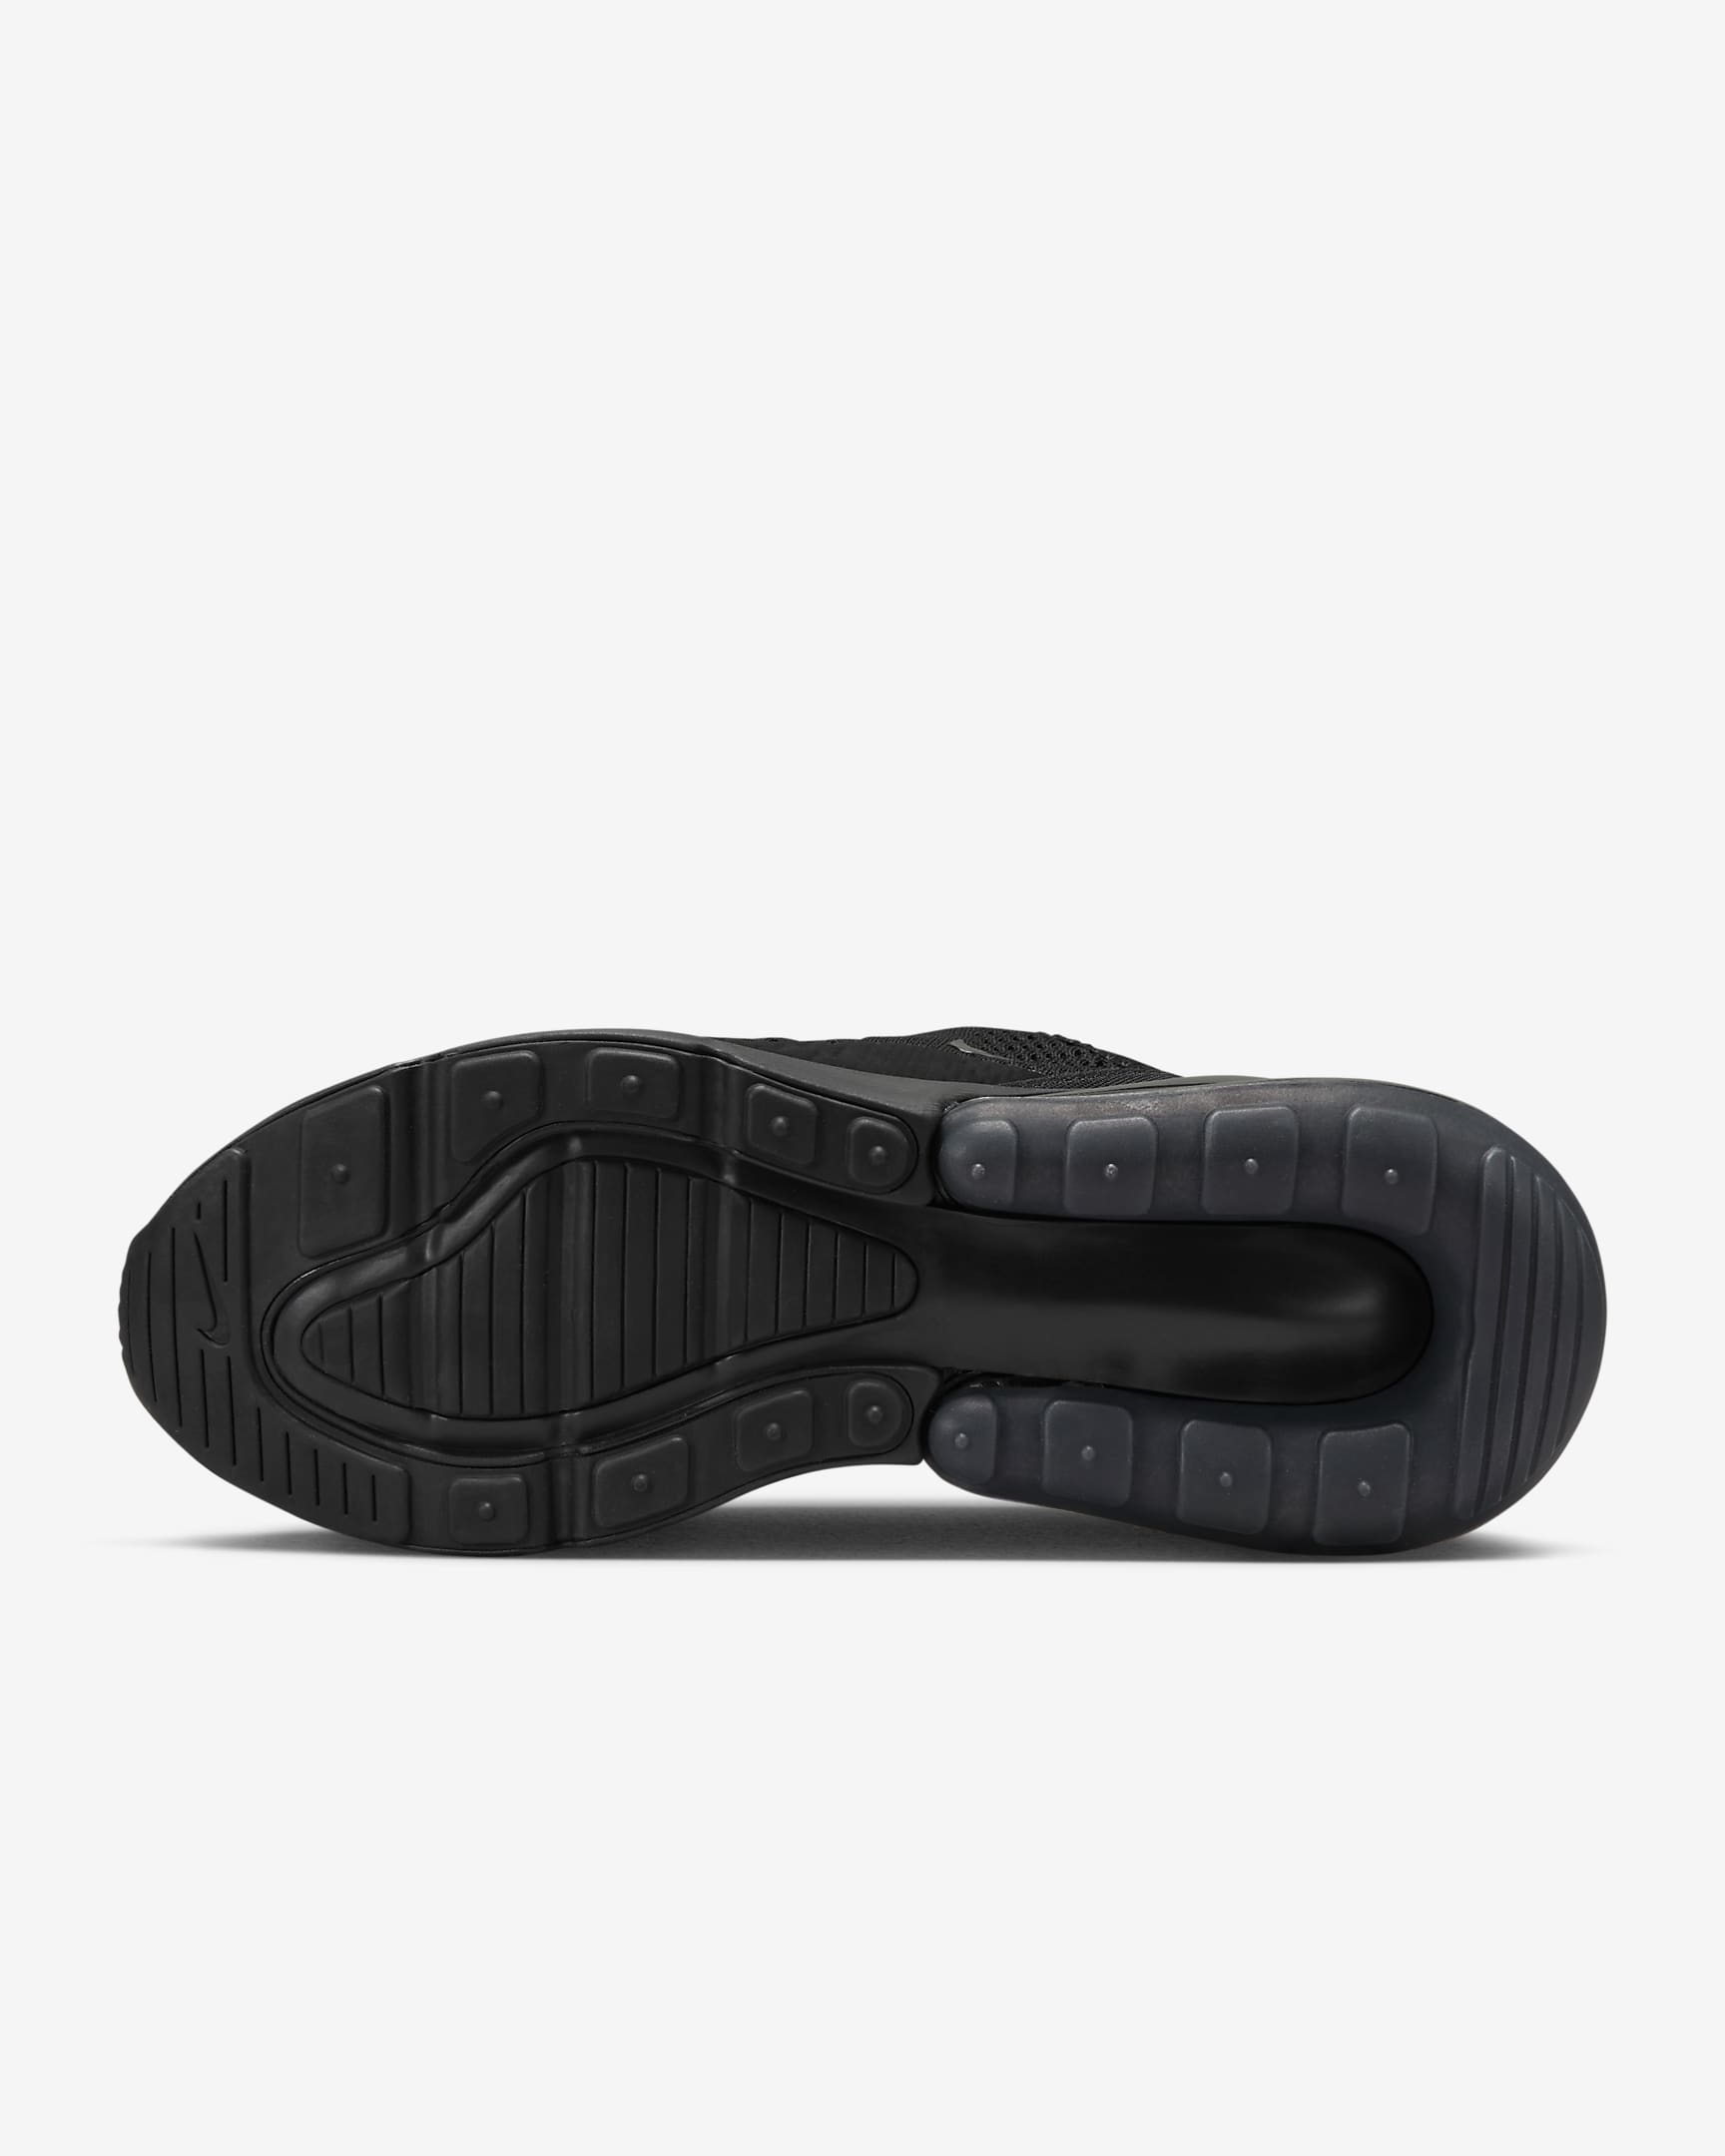 Nike Air Max 270 Sabatilles - Dona - Negre/Negre/Negre